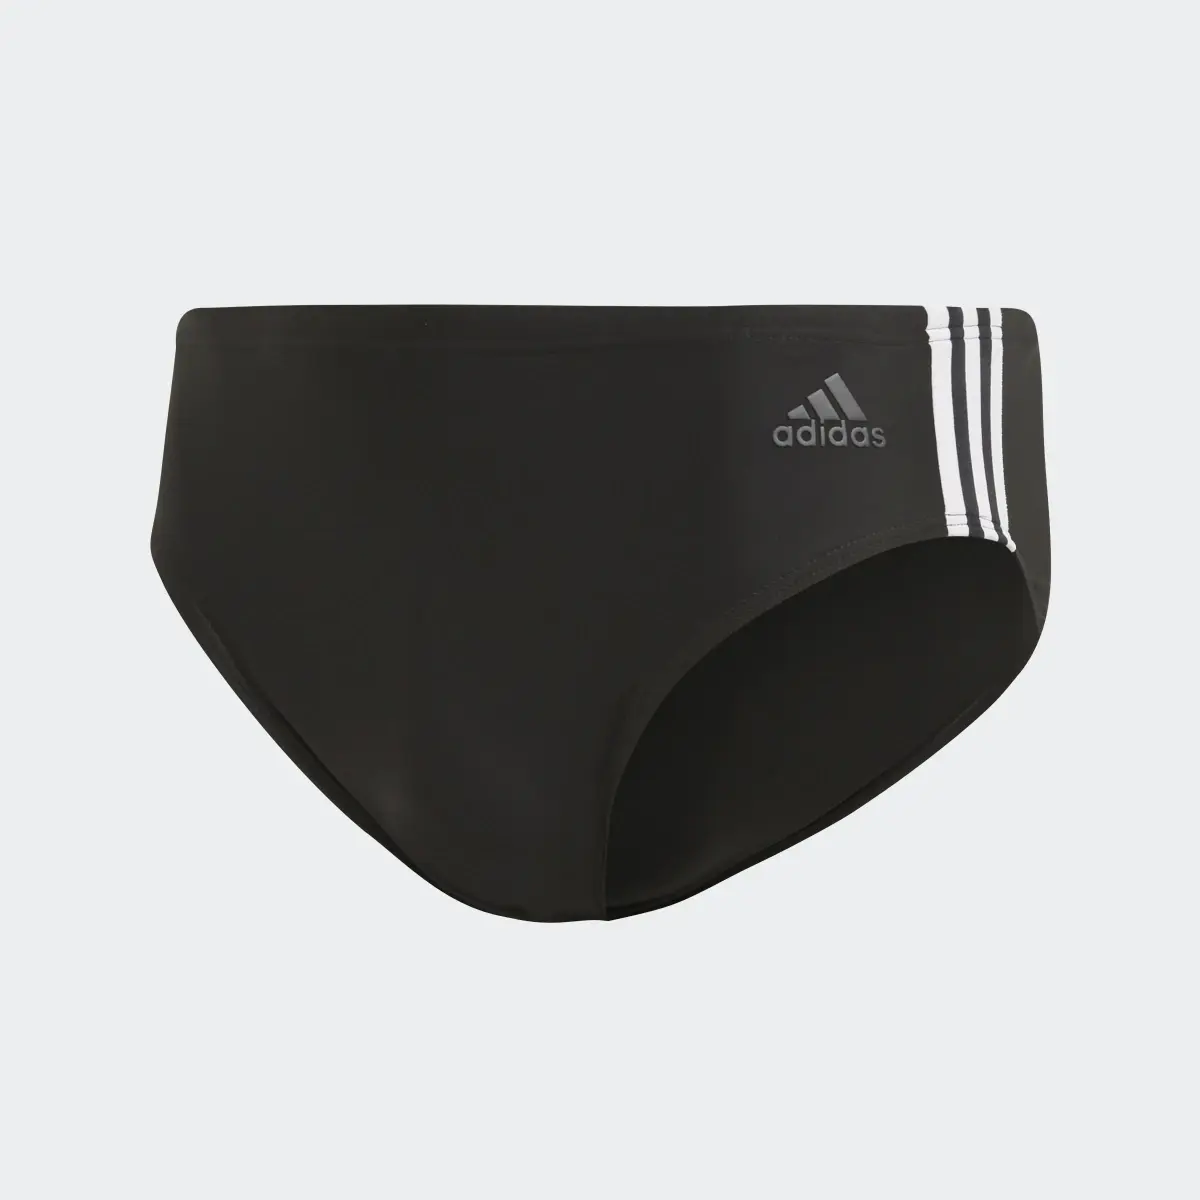 Adidas Fitness 3-Stripes Swim Trunks. 1